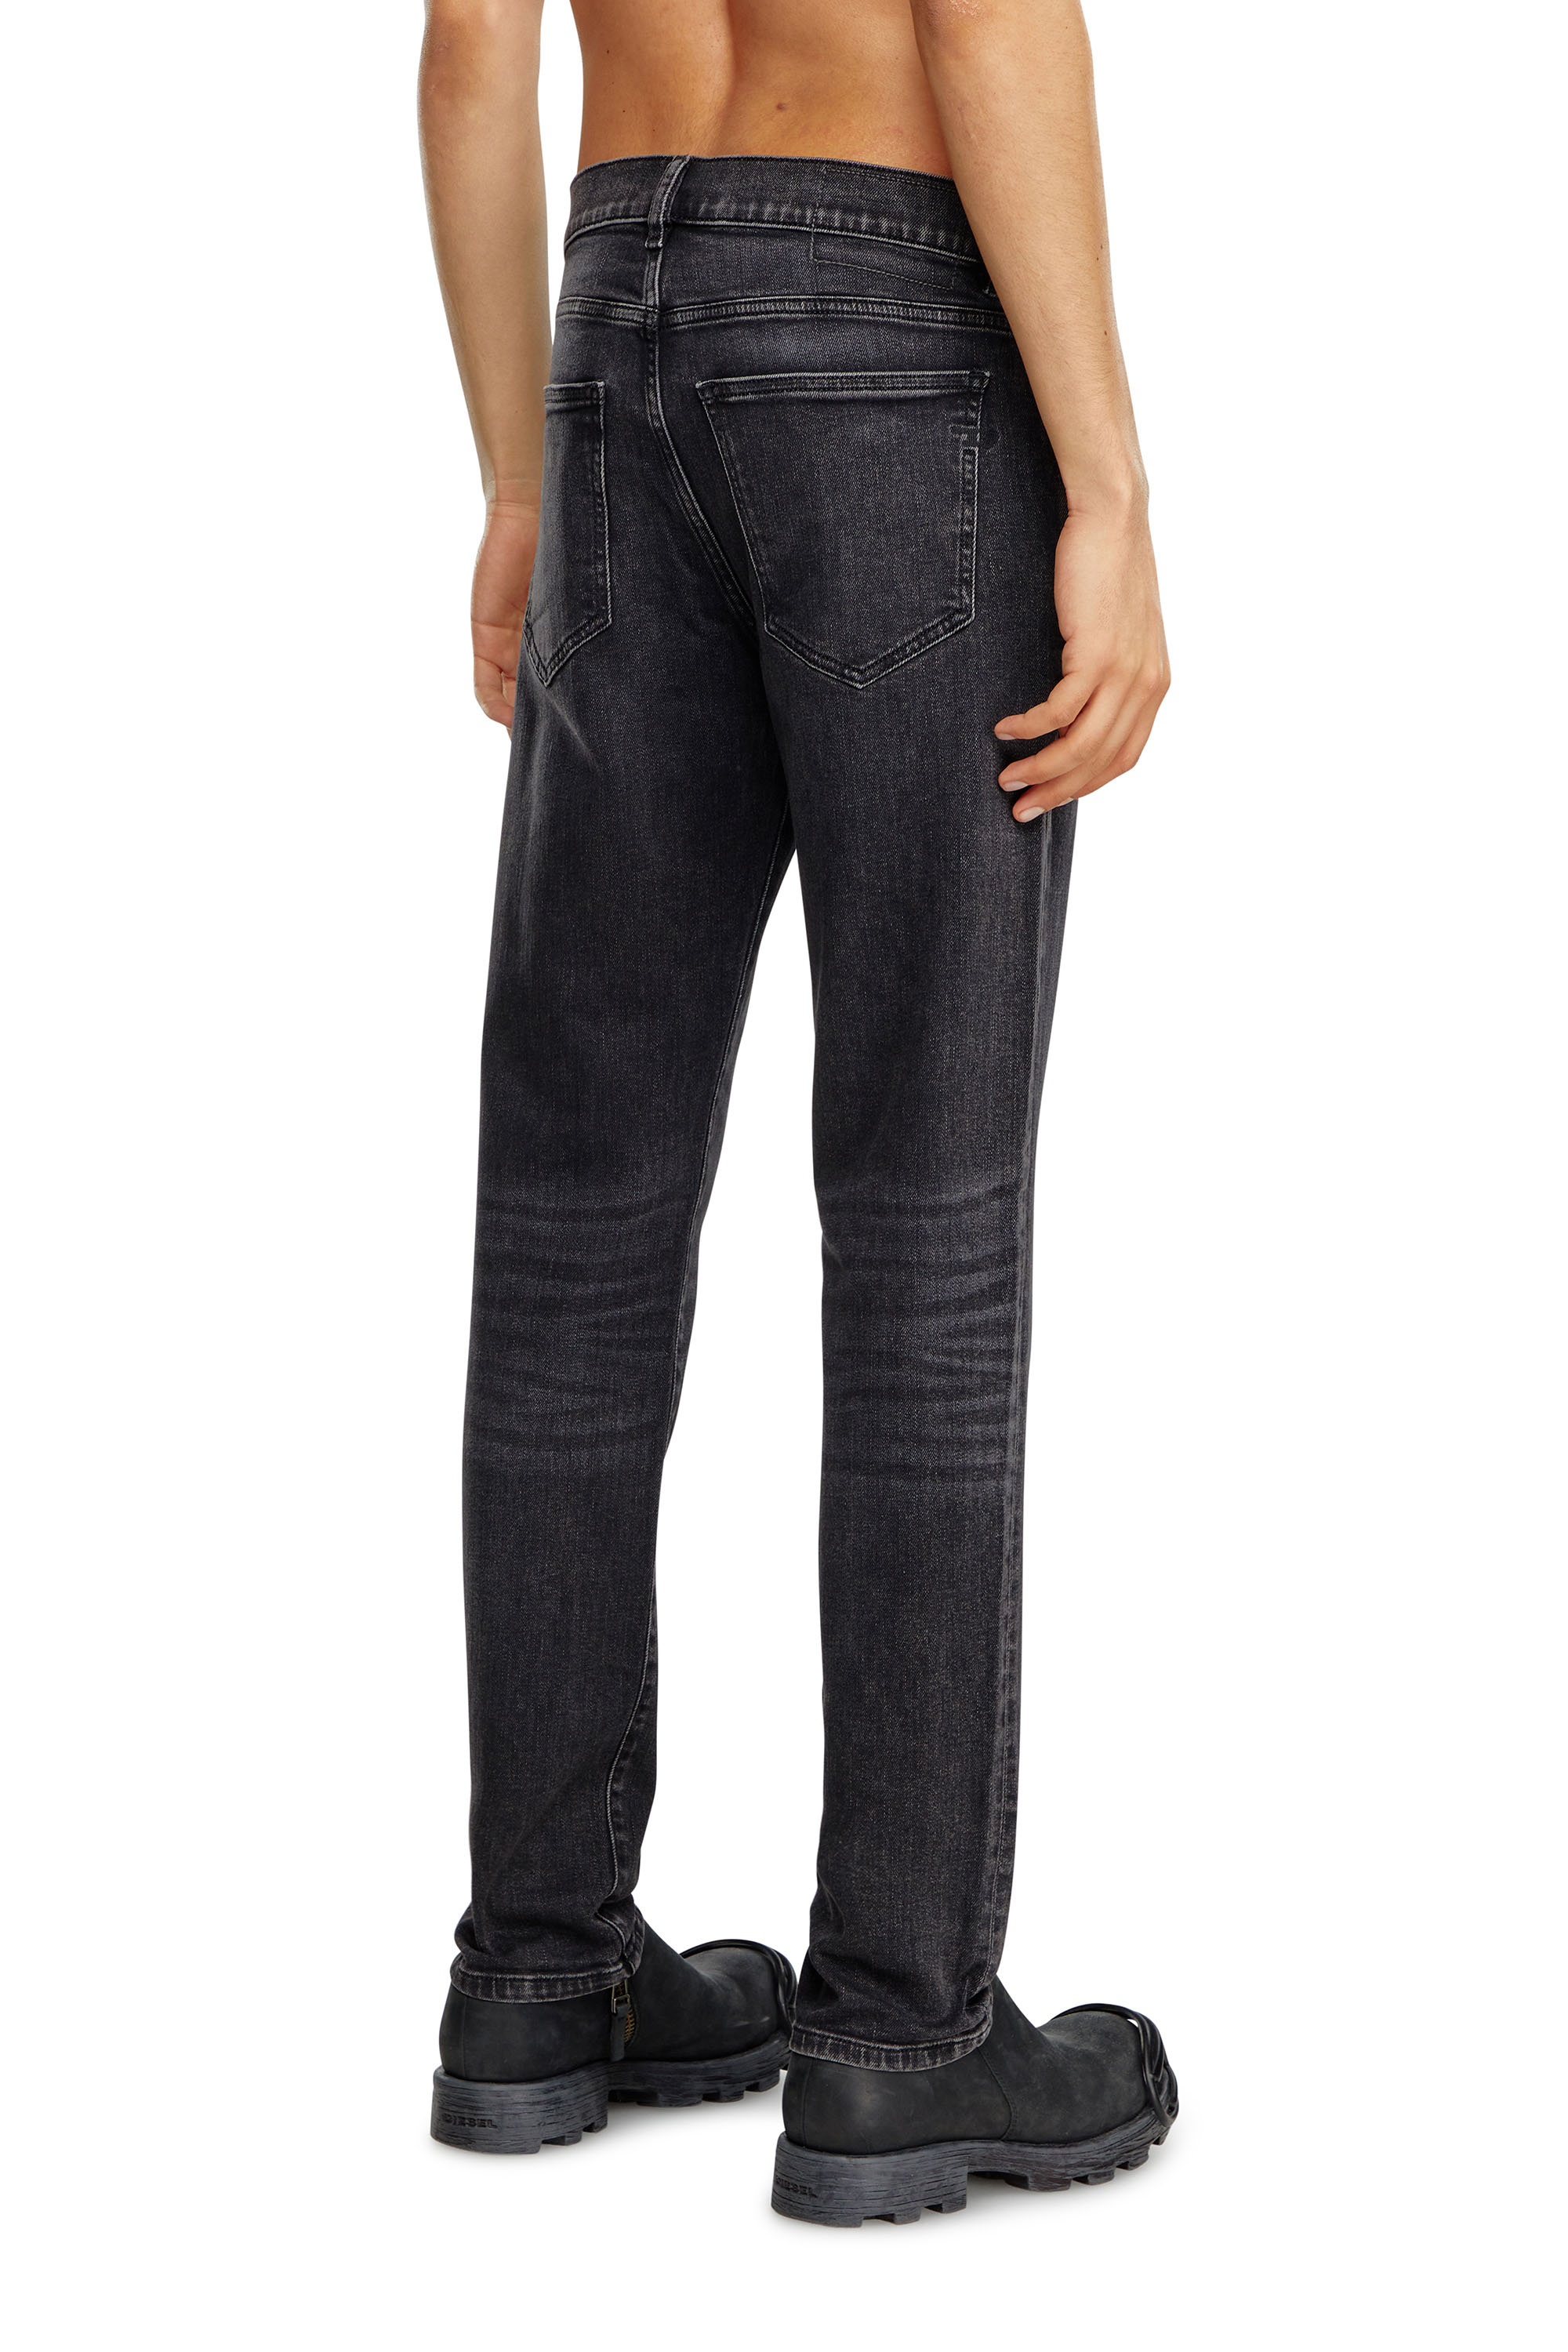 Diesel - Man Slim Jeans 2019 D-Strukt 09B83, Black/Dark grey - Image 4